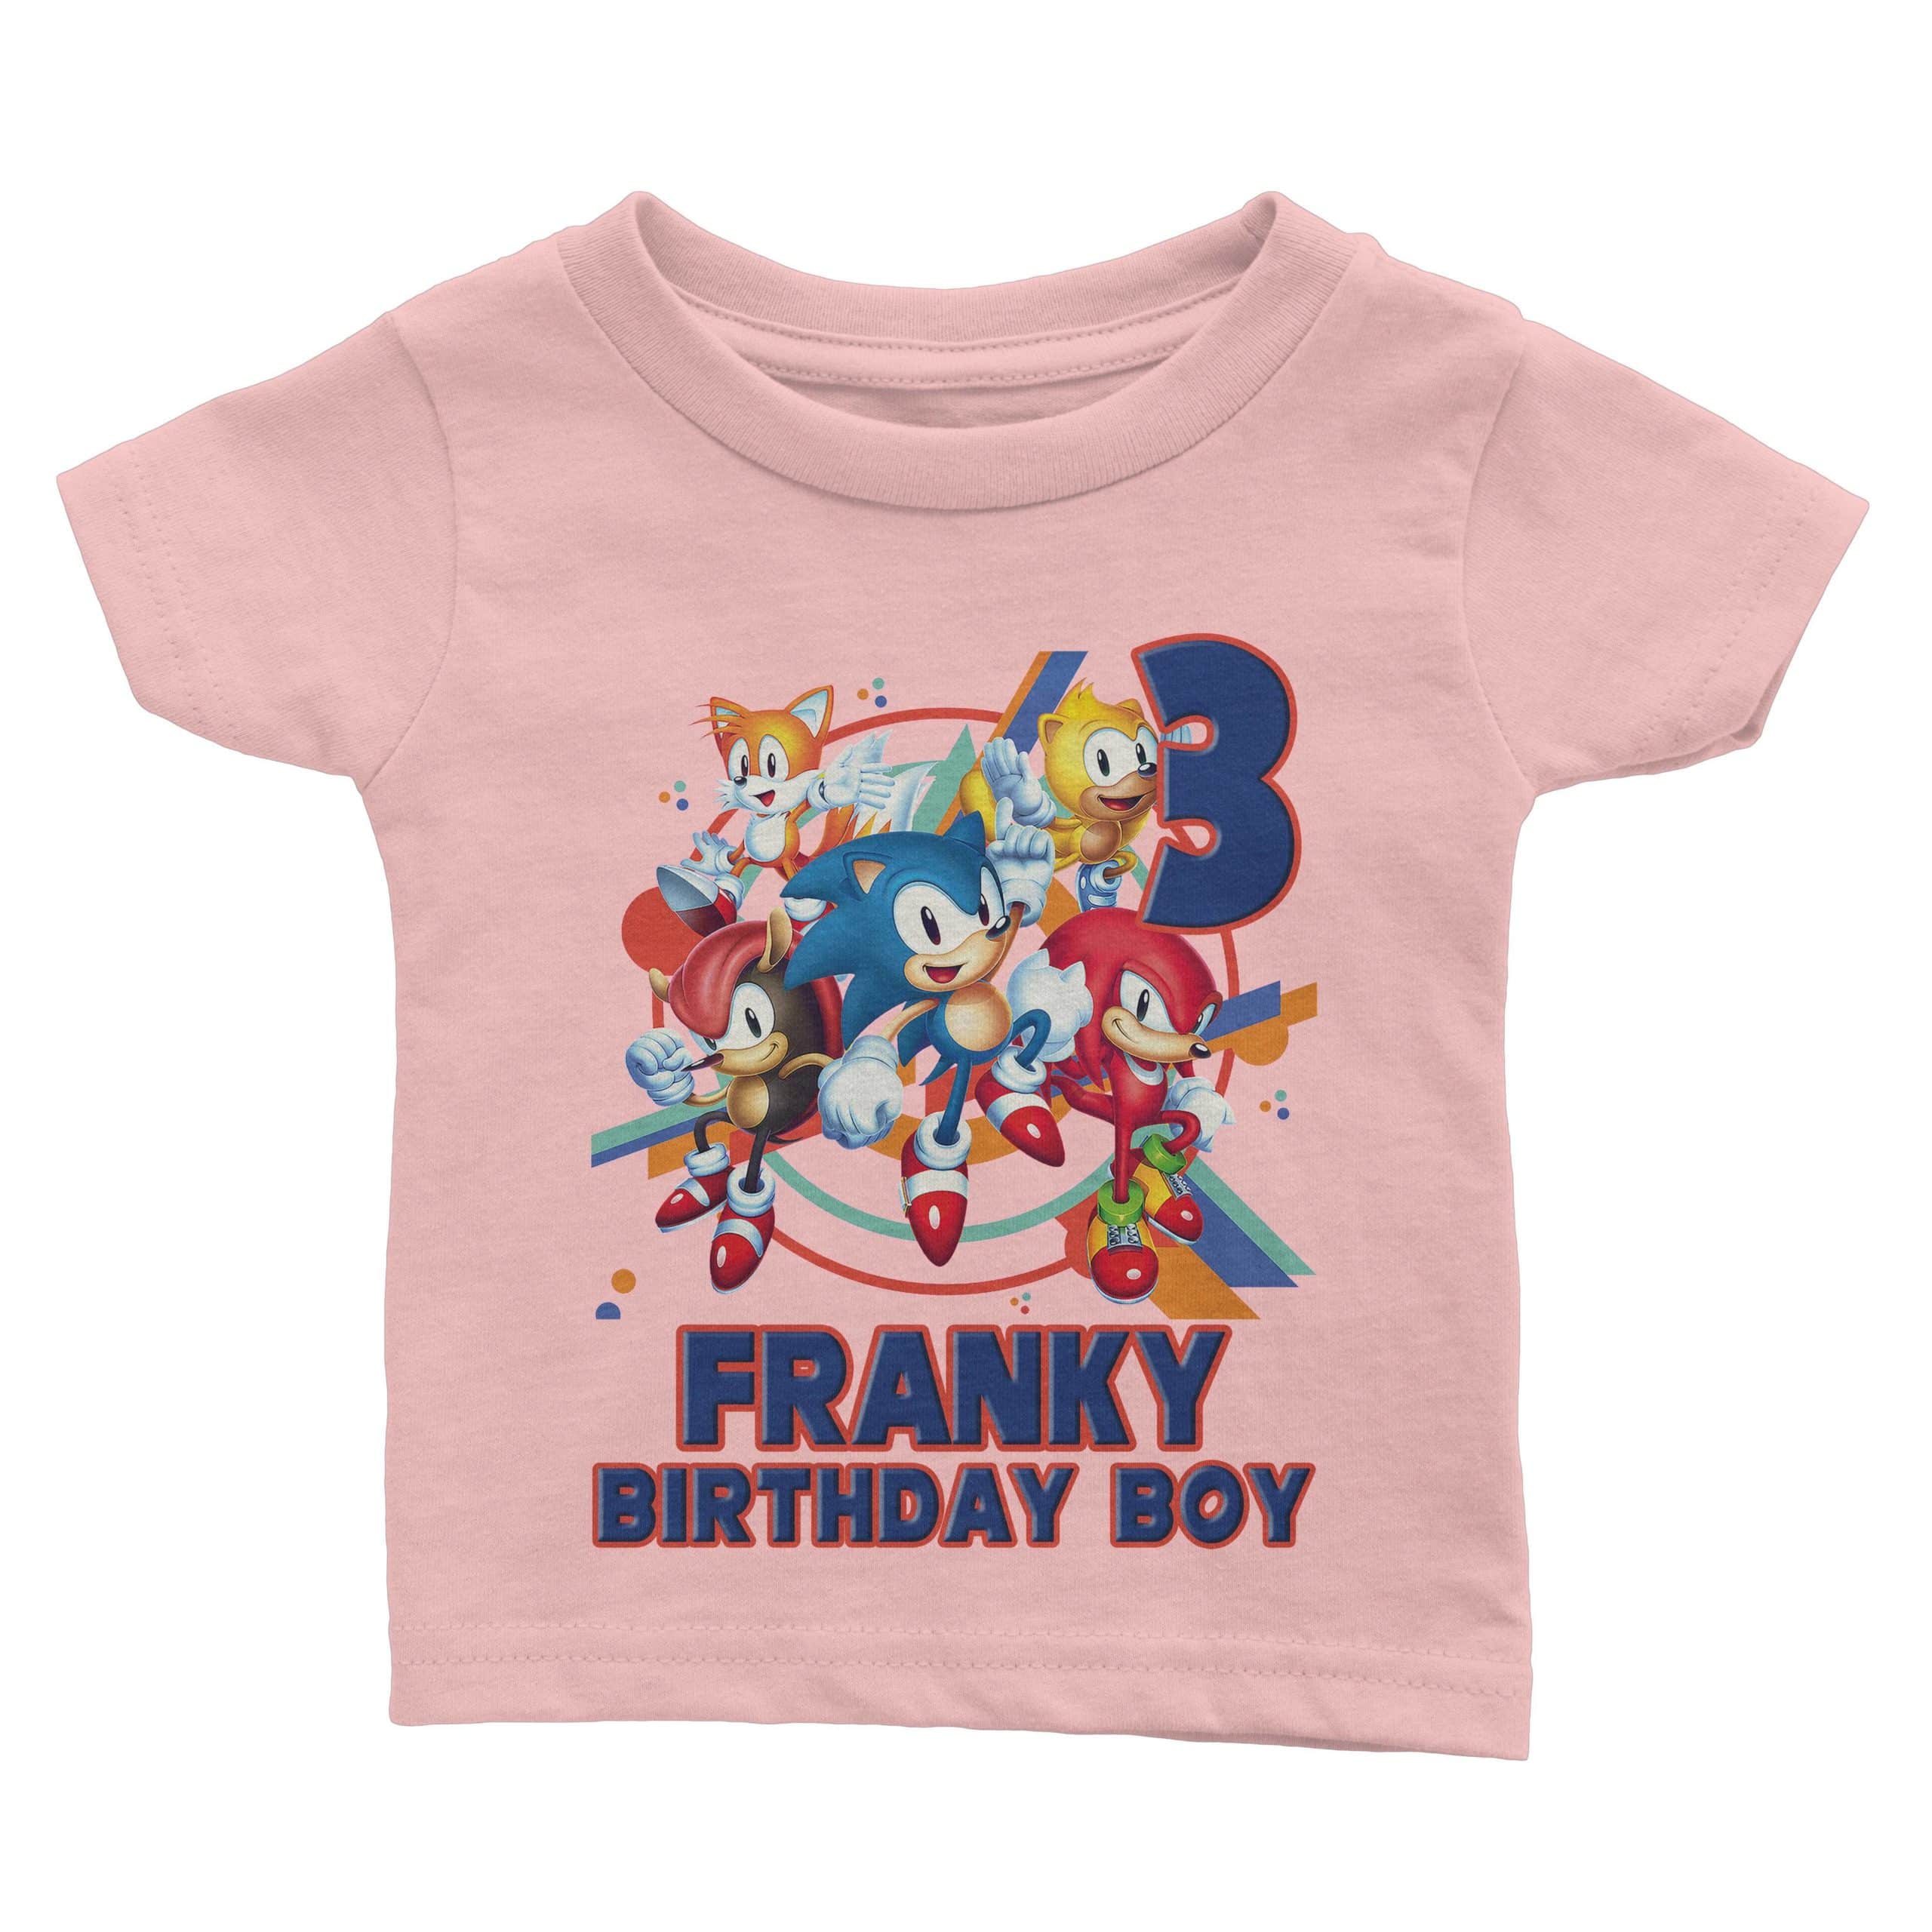 sonic birthday party Sonic birthday family shirts Sonic birthday shirt Kleding Unisex kinderkleding Tops & T-shirts FAST SHIPPING sonic birthday theme 